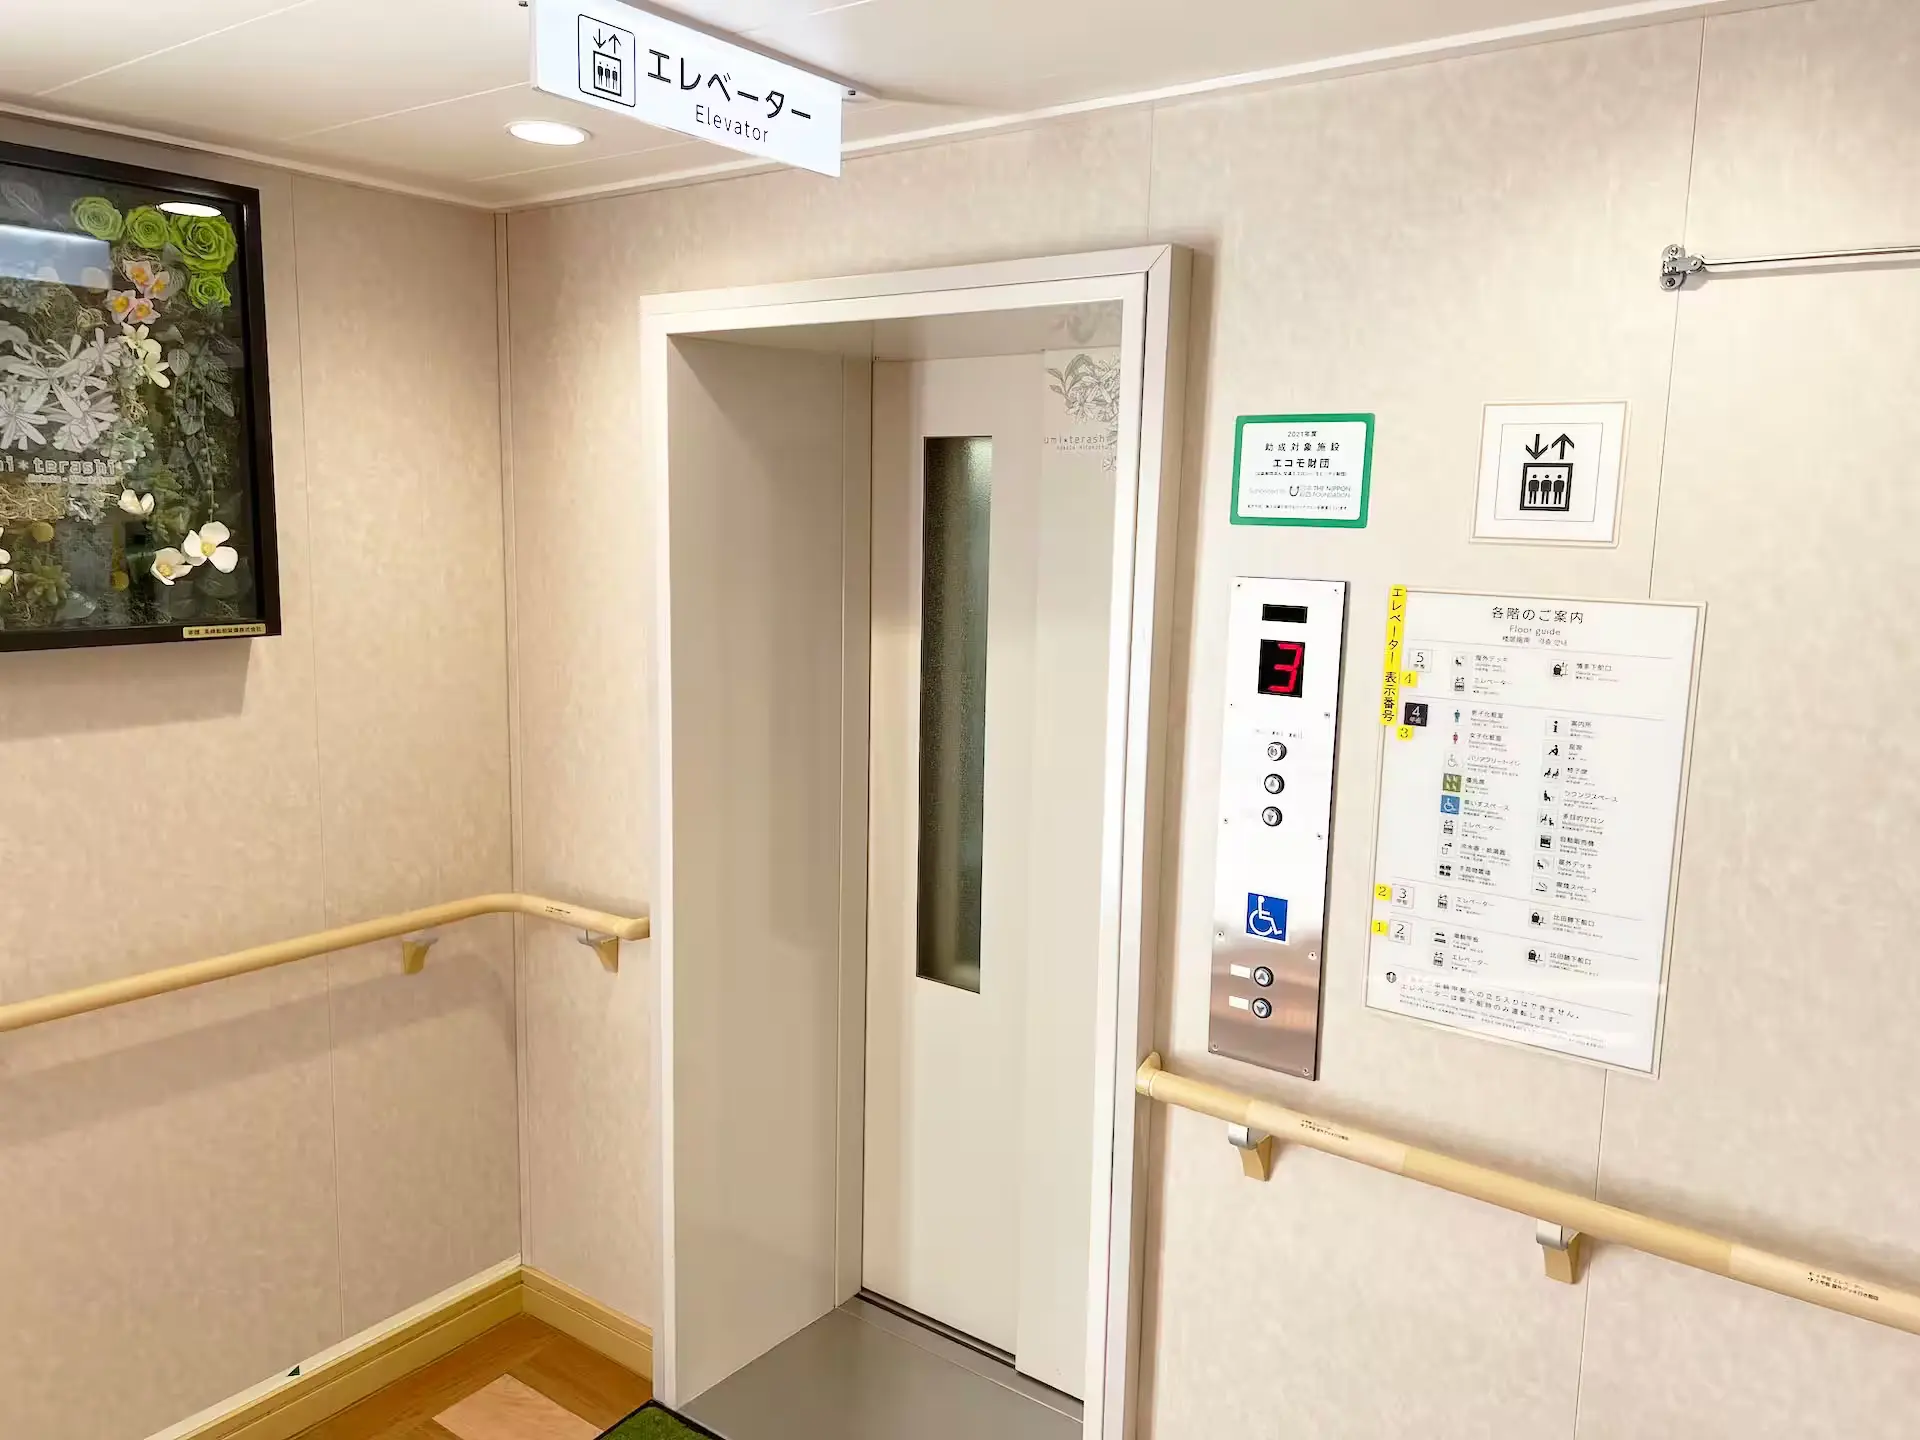 九州郵船うみてらし船内のエレベーター